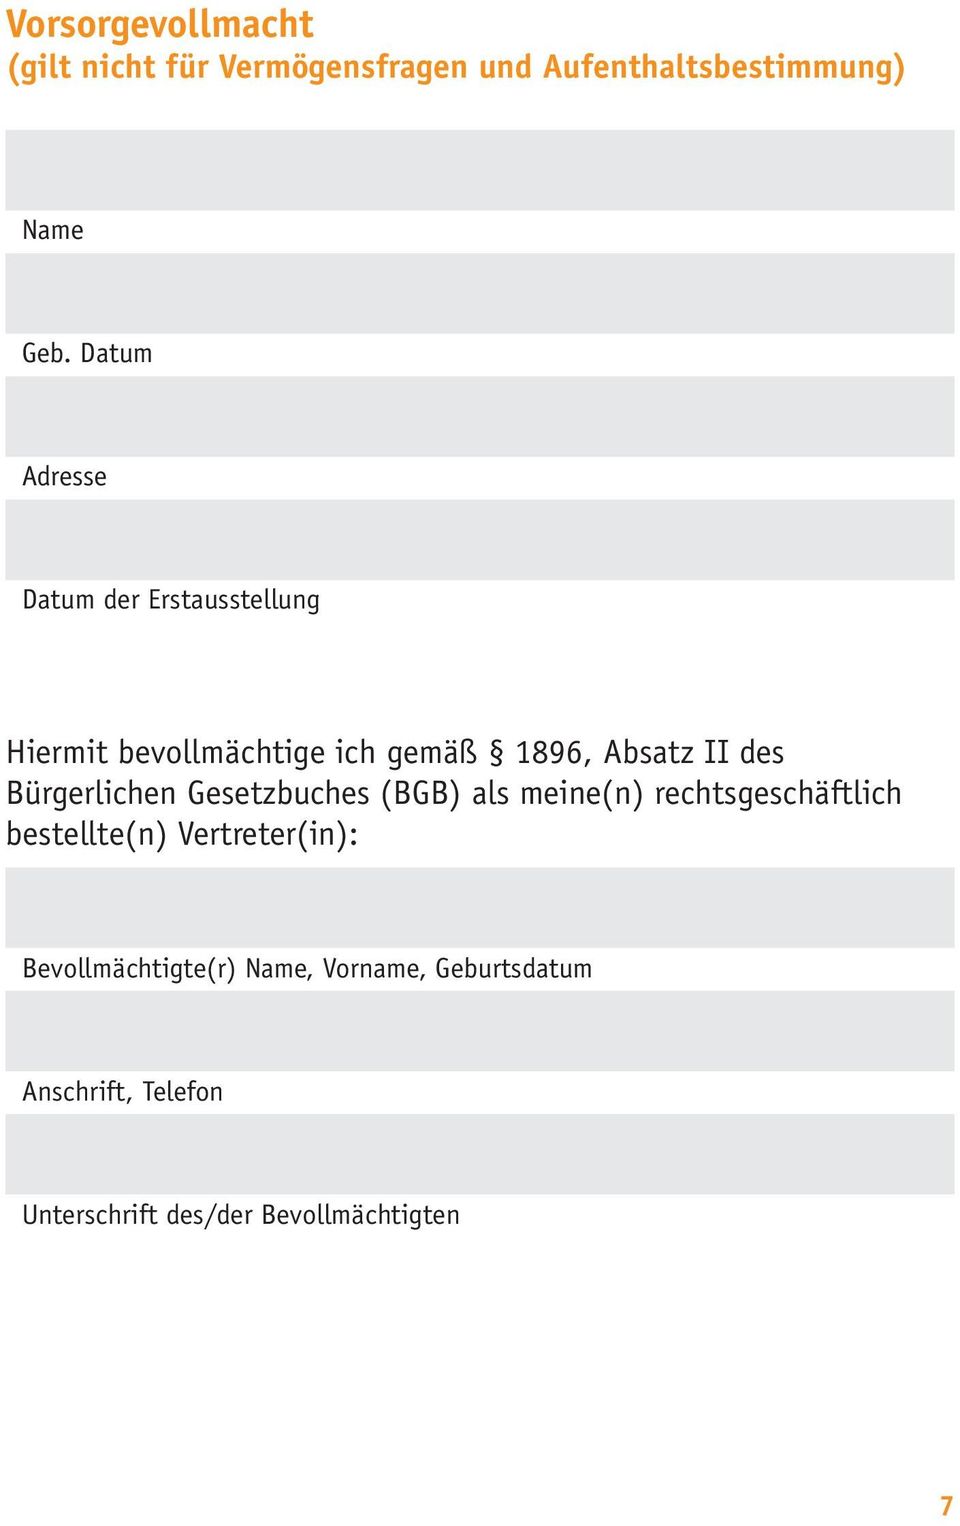 Bürger lichen Gesetzbuches (BGB) als meine(n) rechtsgeschäftlich be stellte(n) Vertreter(in):